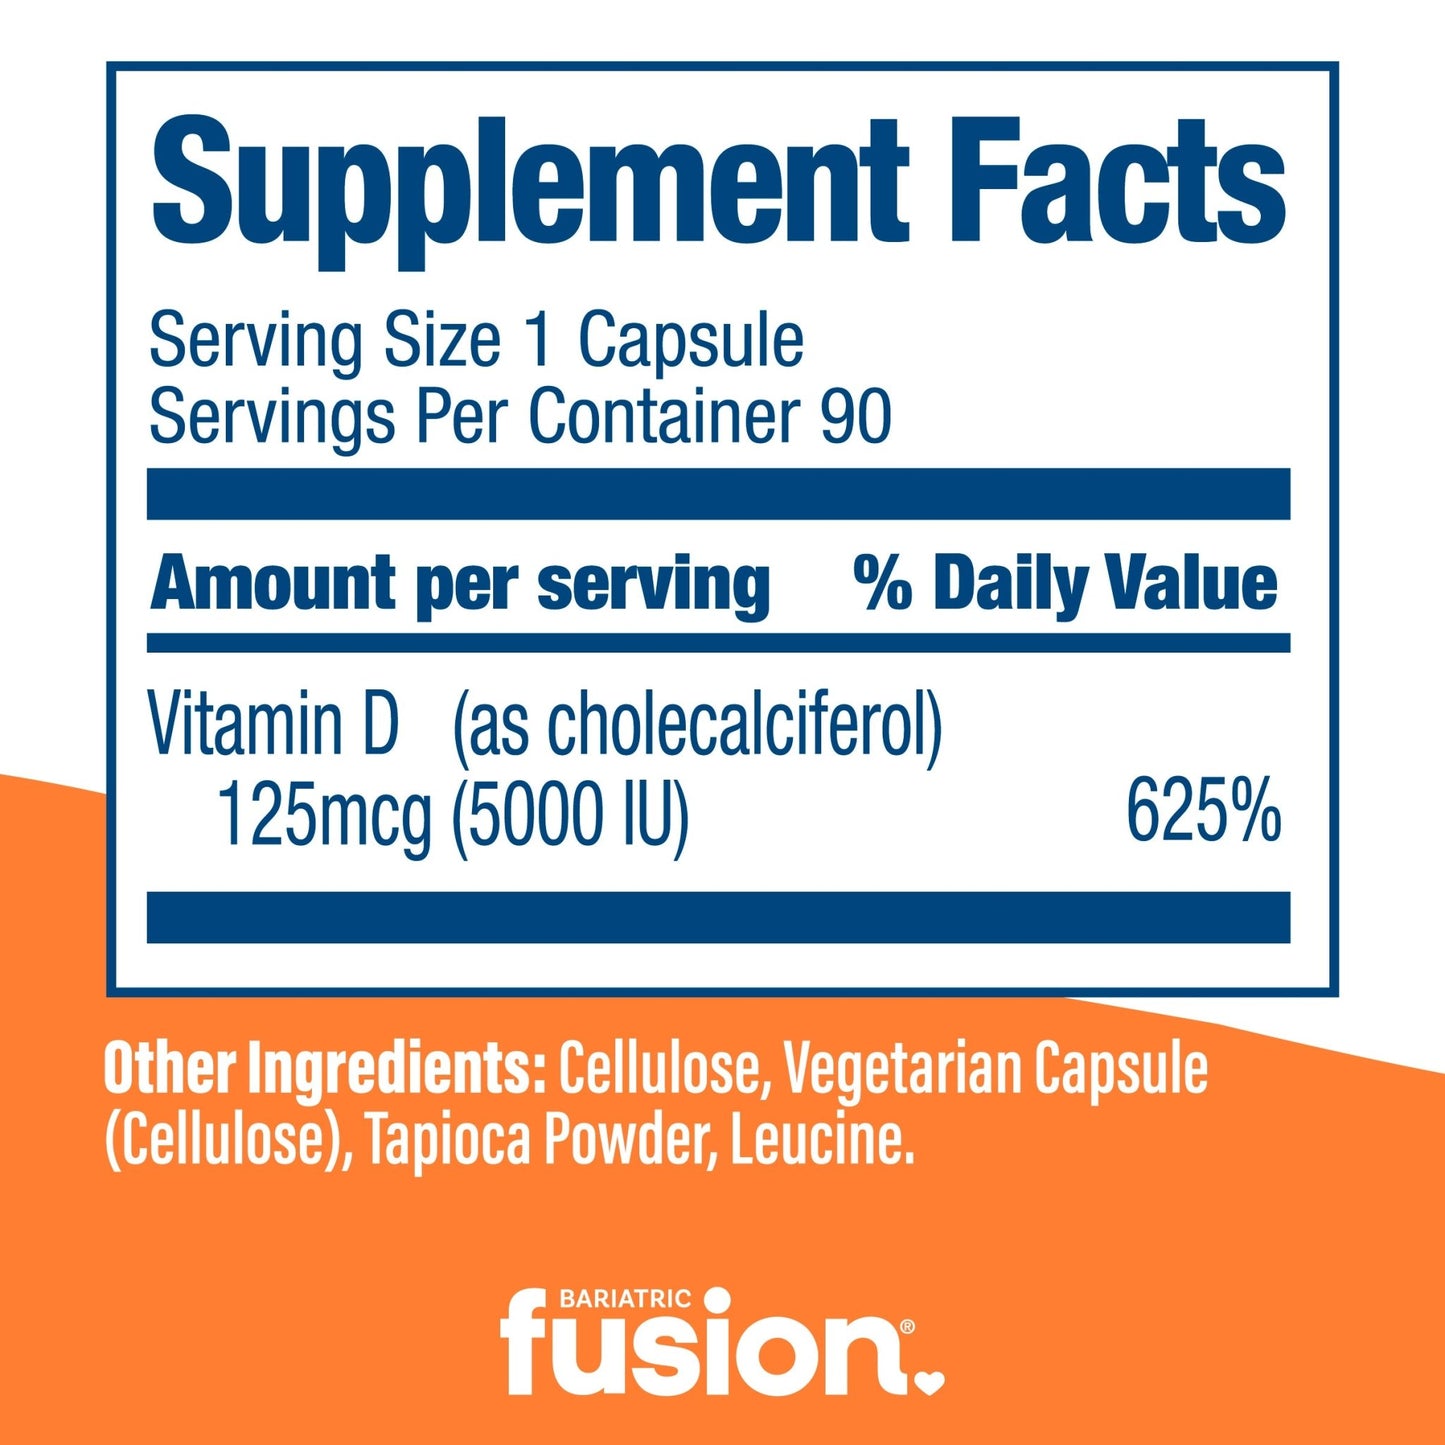 Bariatric Fusion Vitamin D 5000 IU capsules supplement facts.